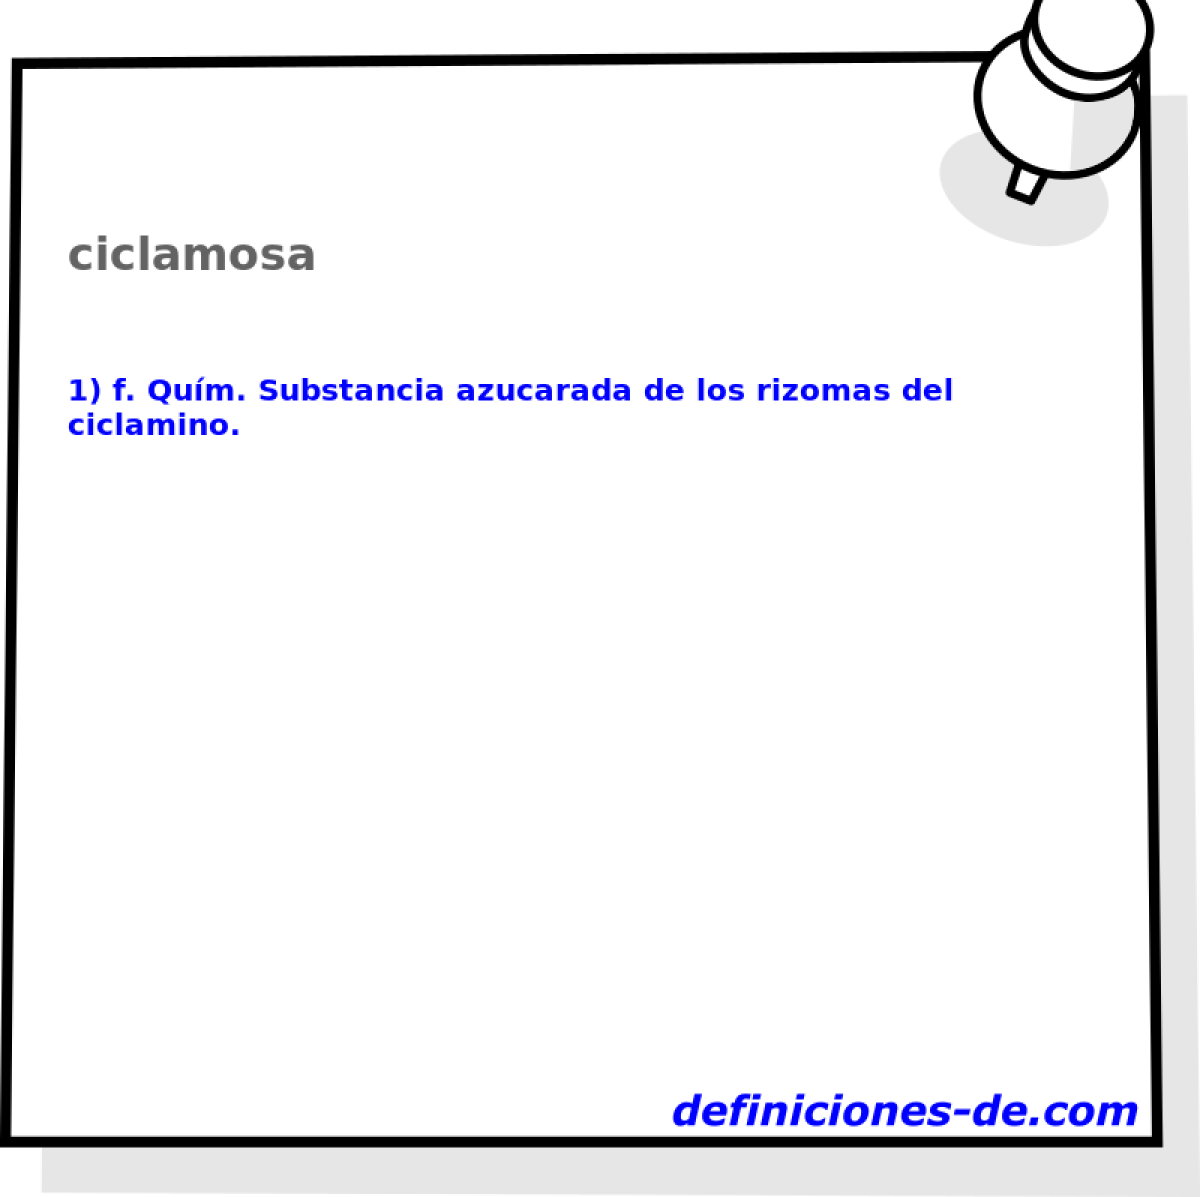 ciclamosa 